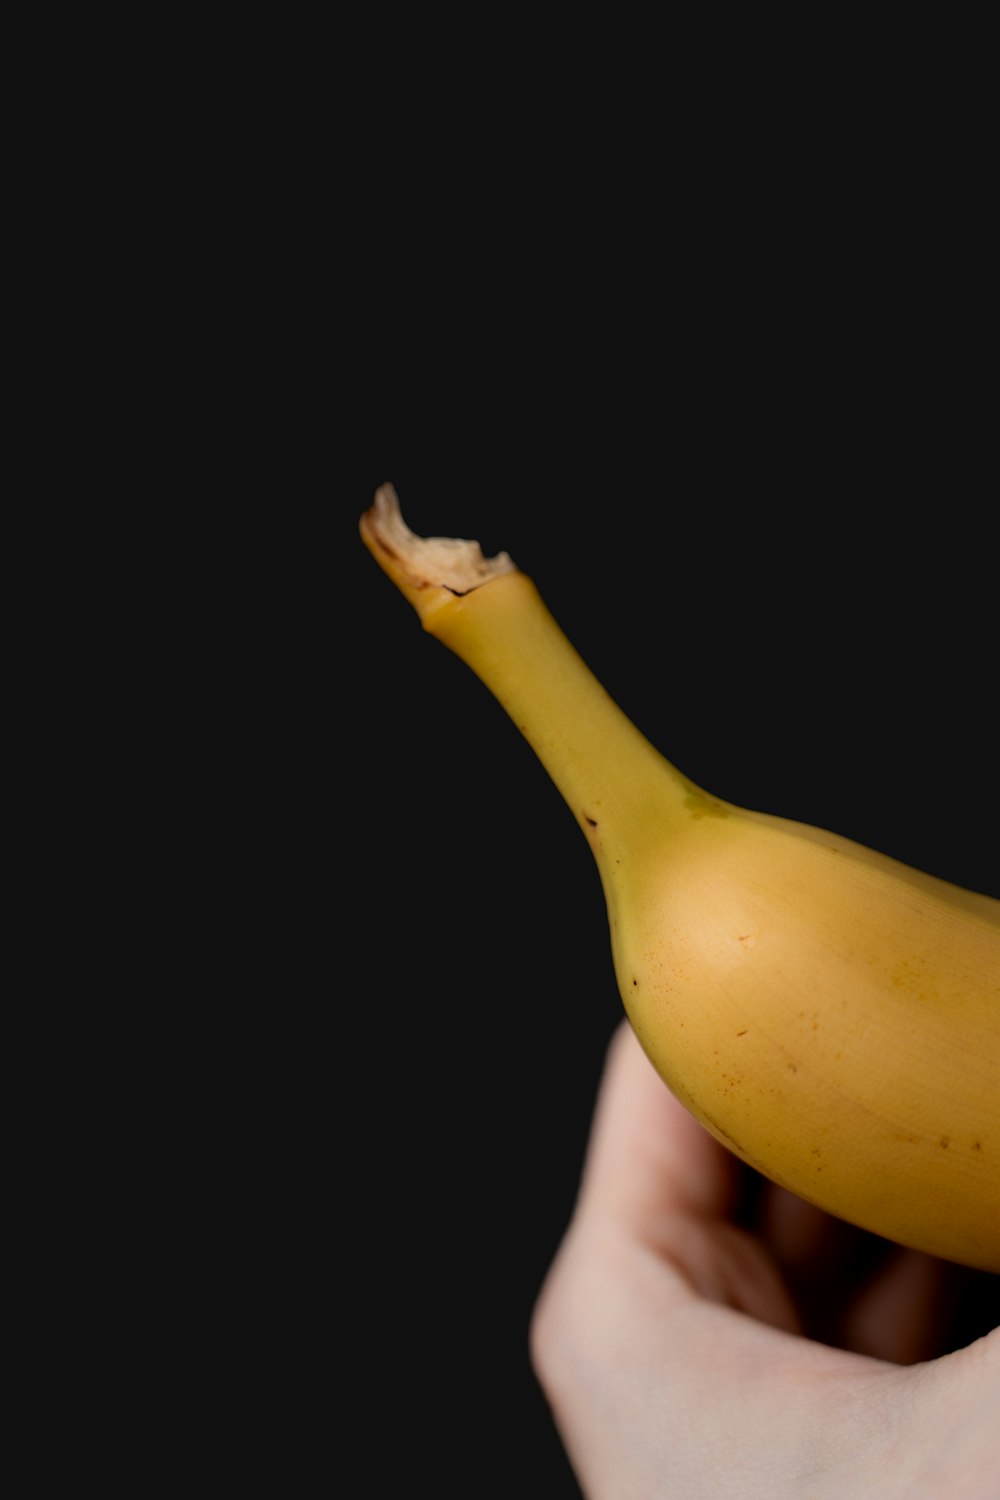 eine Person, die eine Banane in der Hand hält